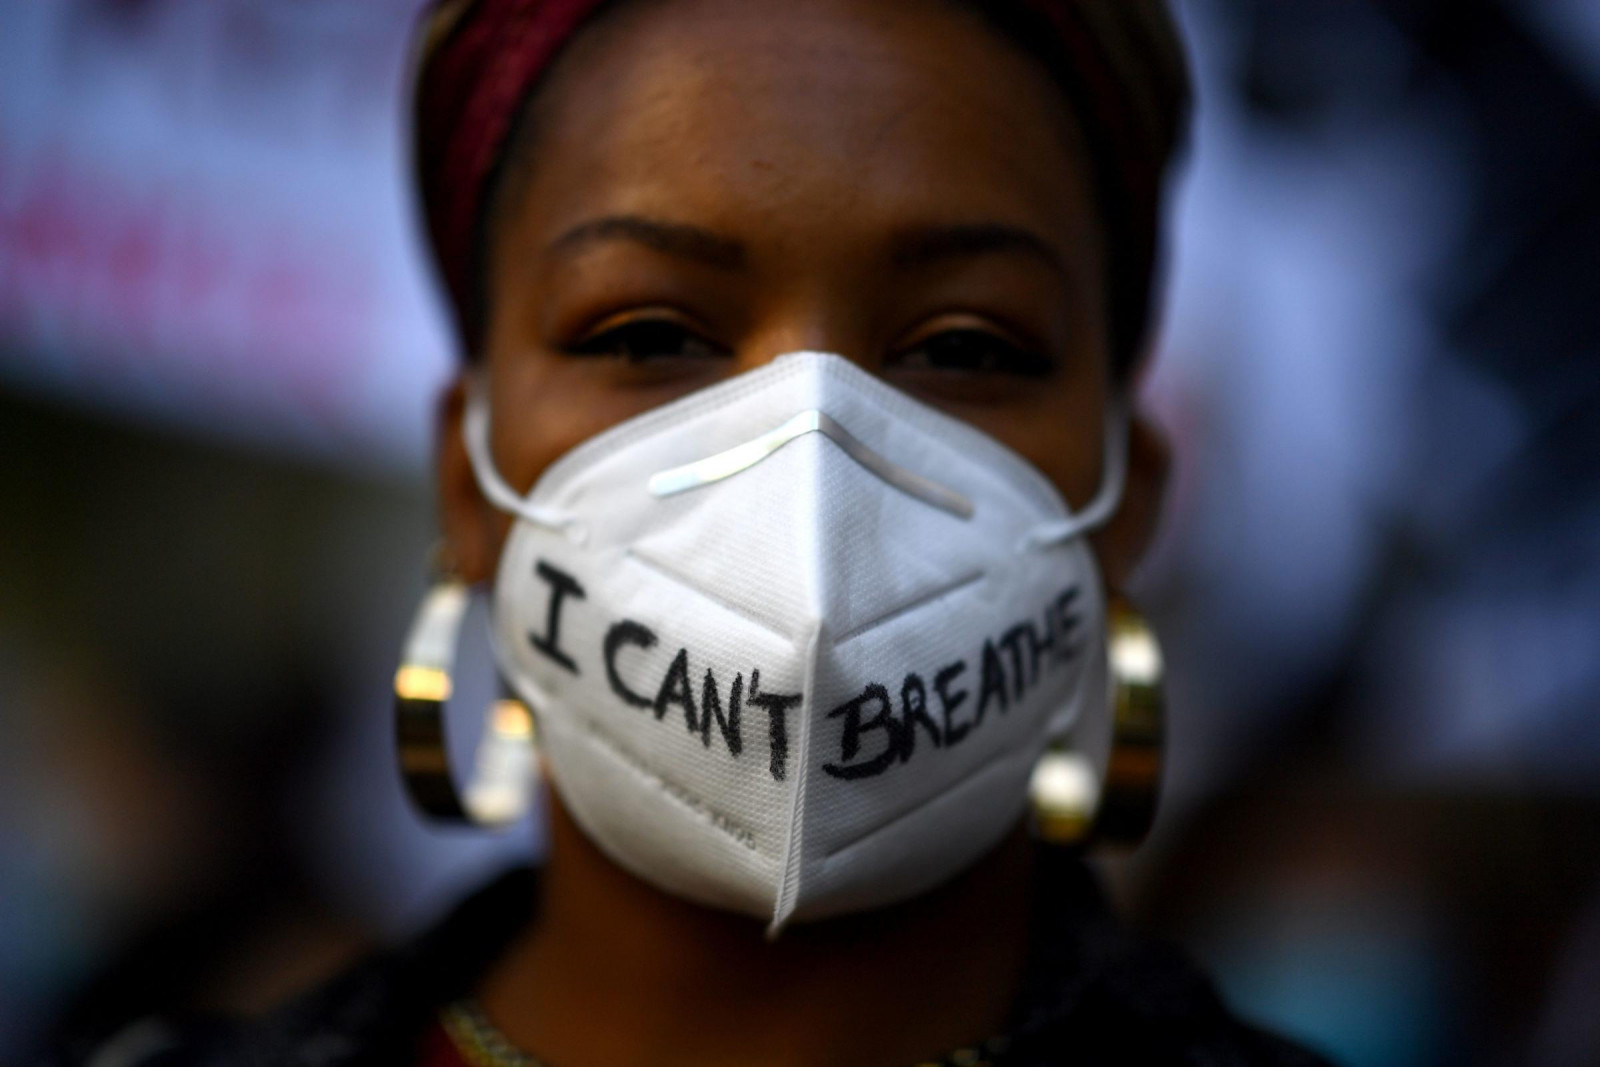 “Black lives Matter” хөдөлгөөний үеэр “Би амьсгалж чадахгүй байна" гэсэн бичигтэй маск зүүсэн эмэгтэй